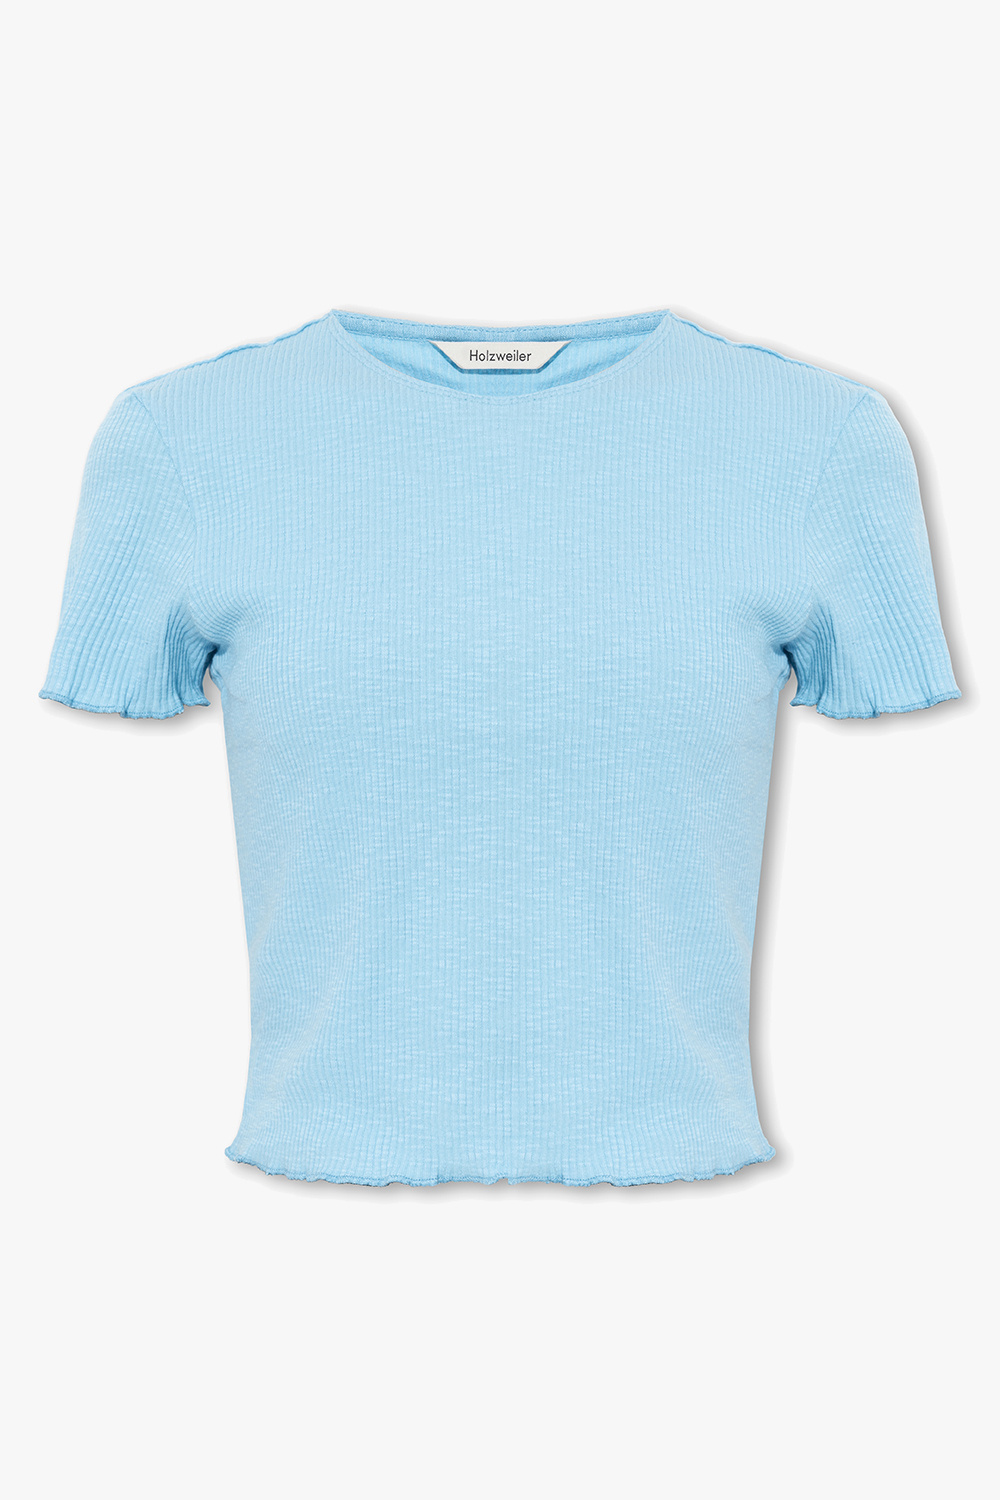 Extension-fmedShops Canada - Light blue \'Lego® Wear T - b ab tie-dye  cropped T-shirt Blau - Sort shirt SS 12010477 102 Holzweiler